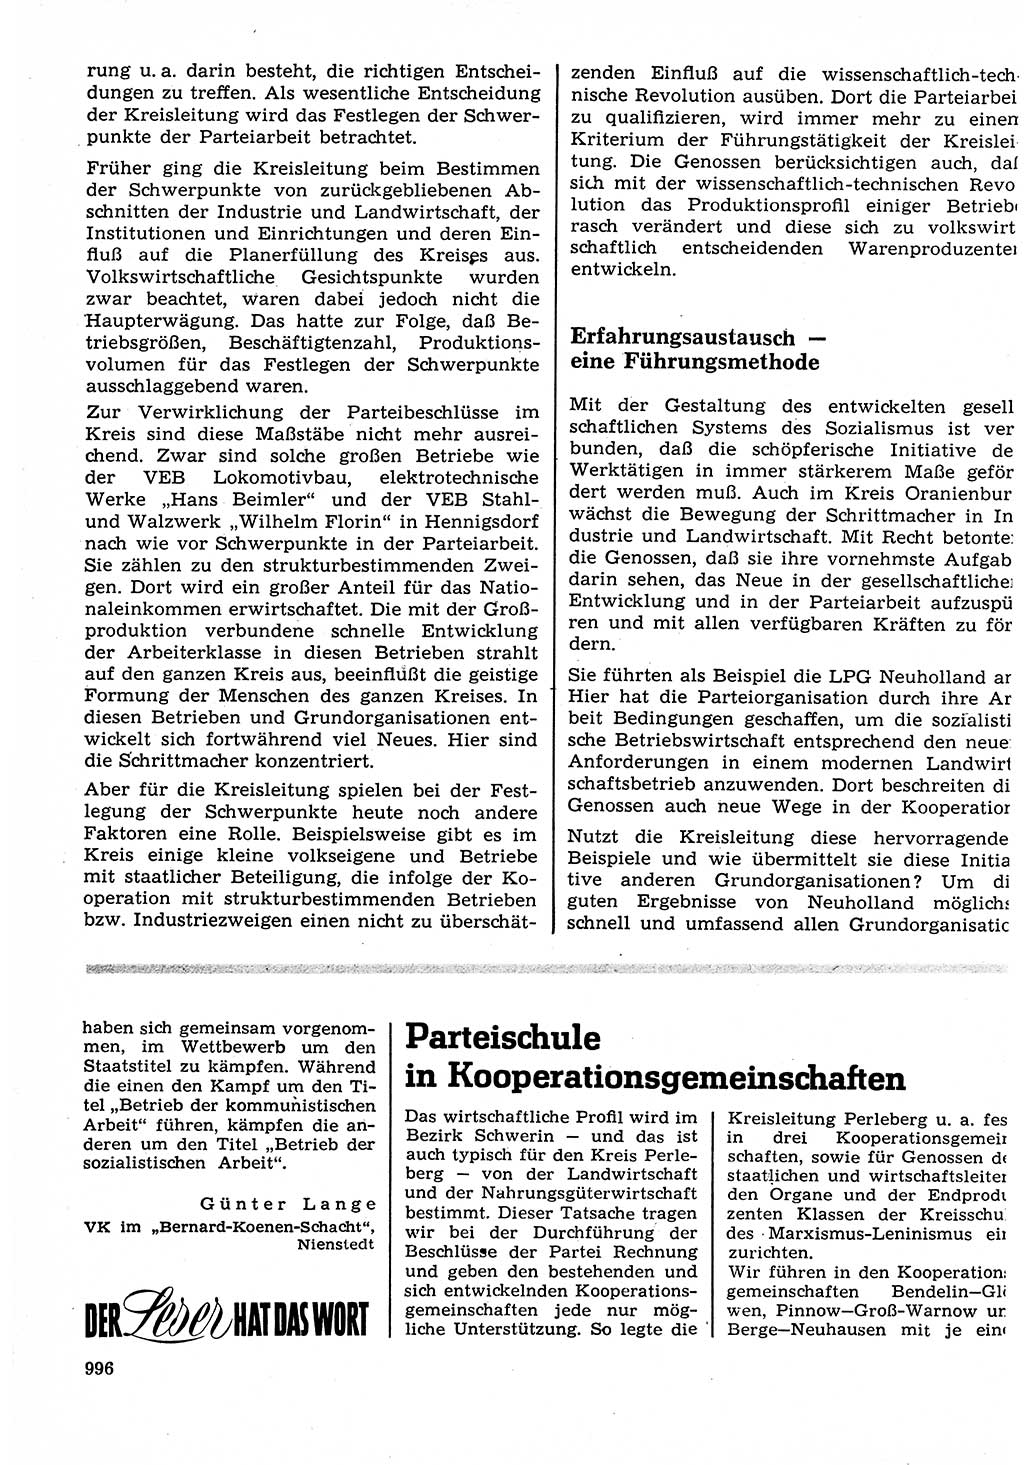 Neuer Weg (NW), Organ des Zentralkomitees (ZK) der SED (Sozialistische Einheitspartei Deutschlands) für Fragen des Parteilebens, 22. Jahrgang [Deutsche Demokratische Republik (DDR)] 1967, Seite 996 (NW ZK SED DDR 1967, S. 996)